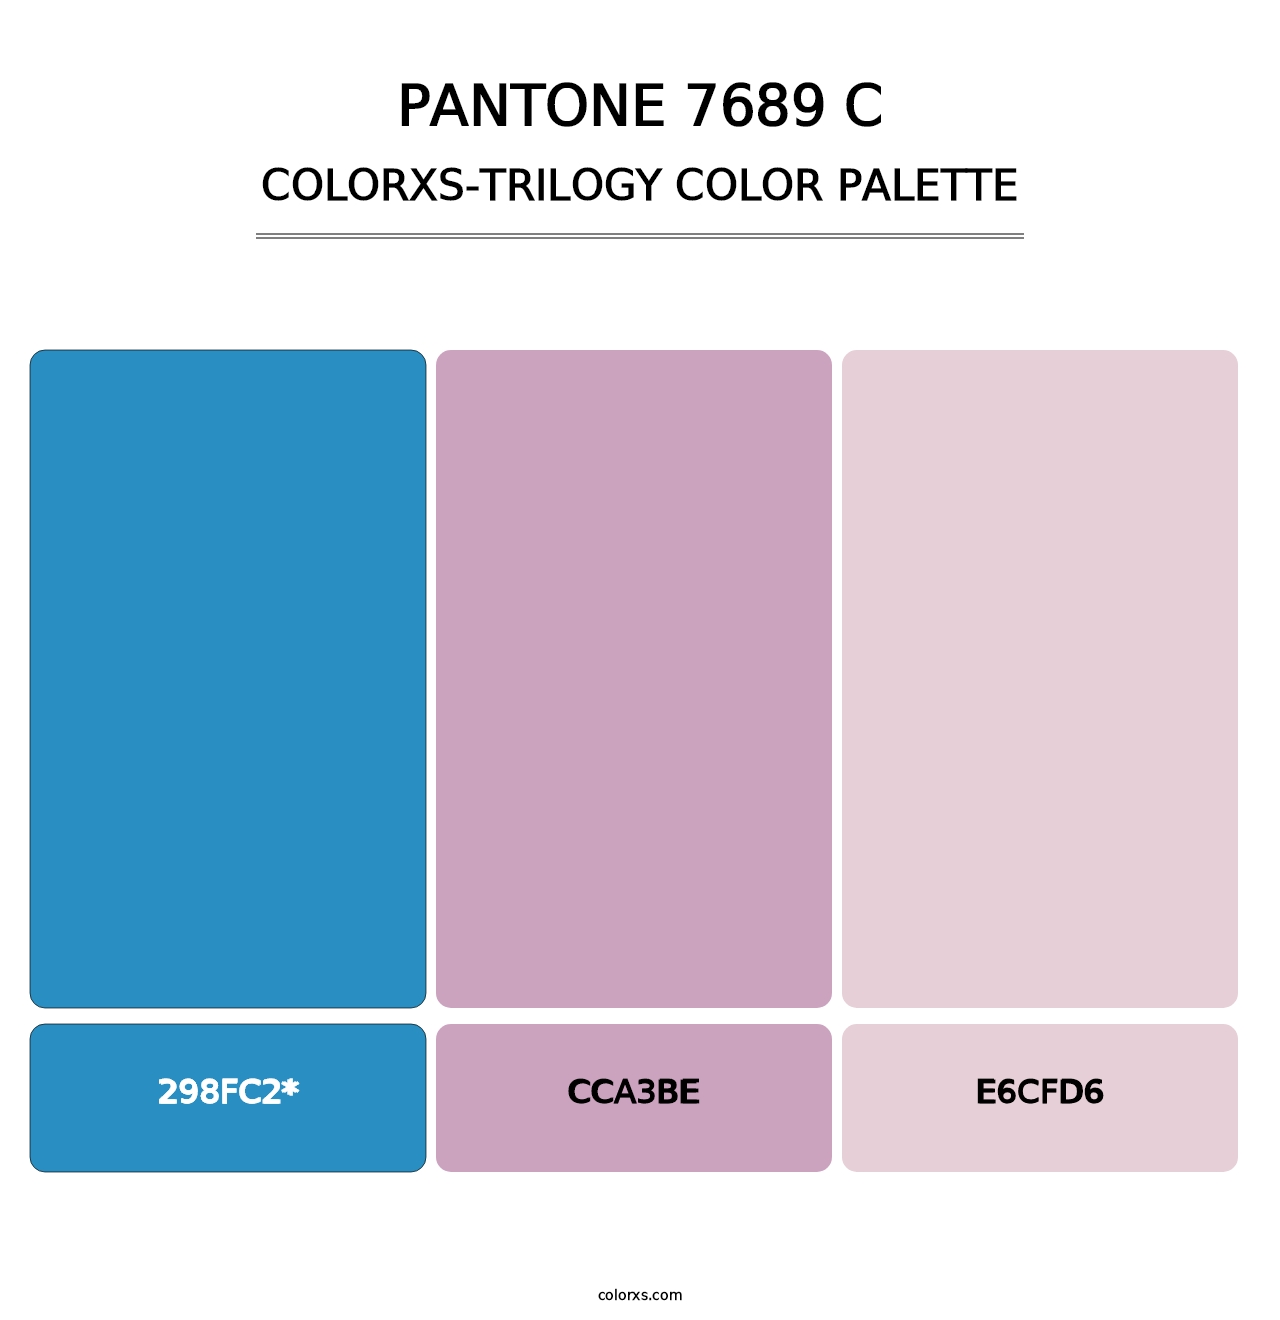 PANTONE 7689 C - Colorxs Trilogy Palette